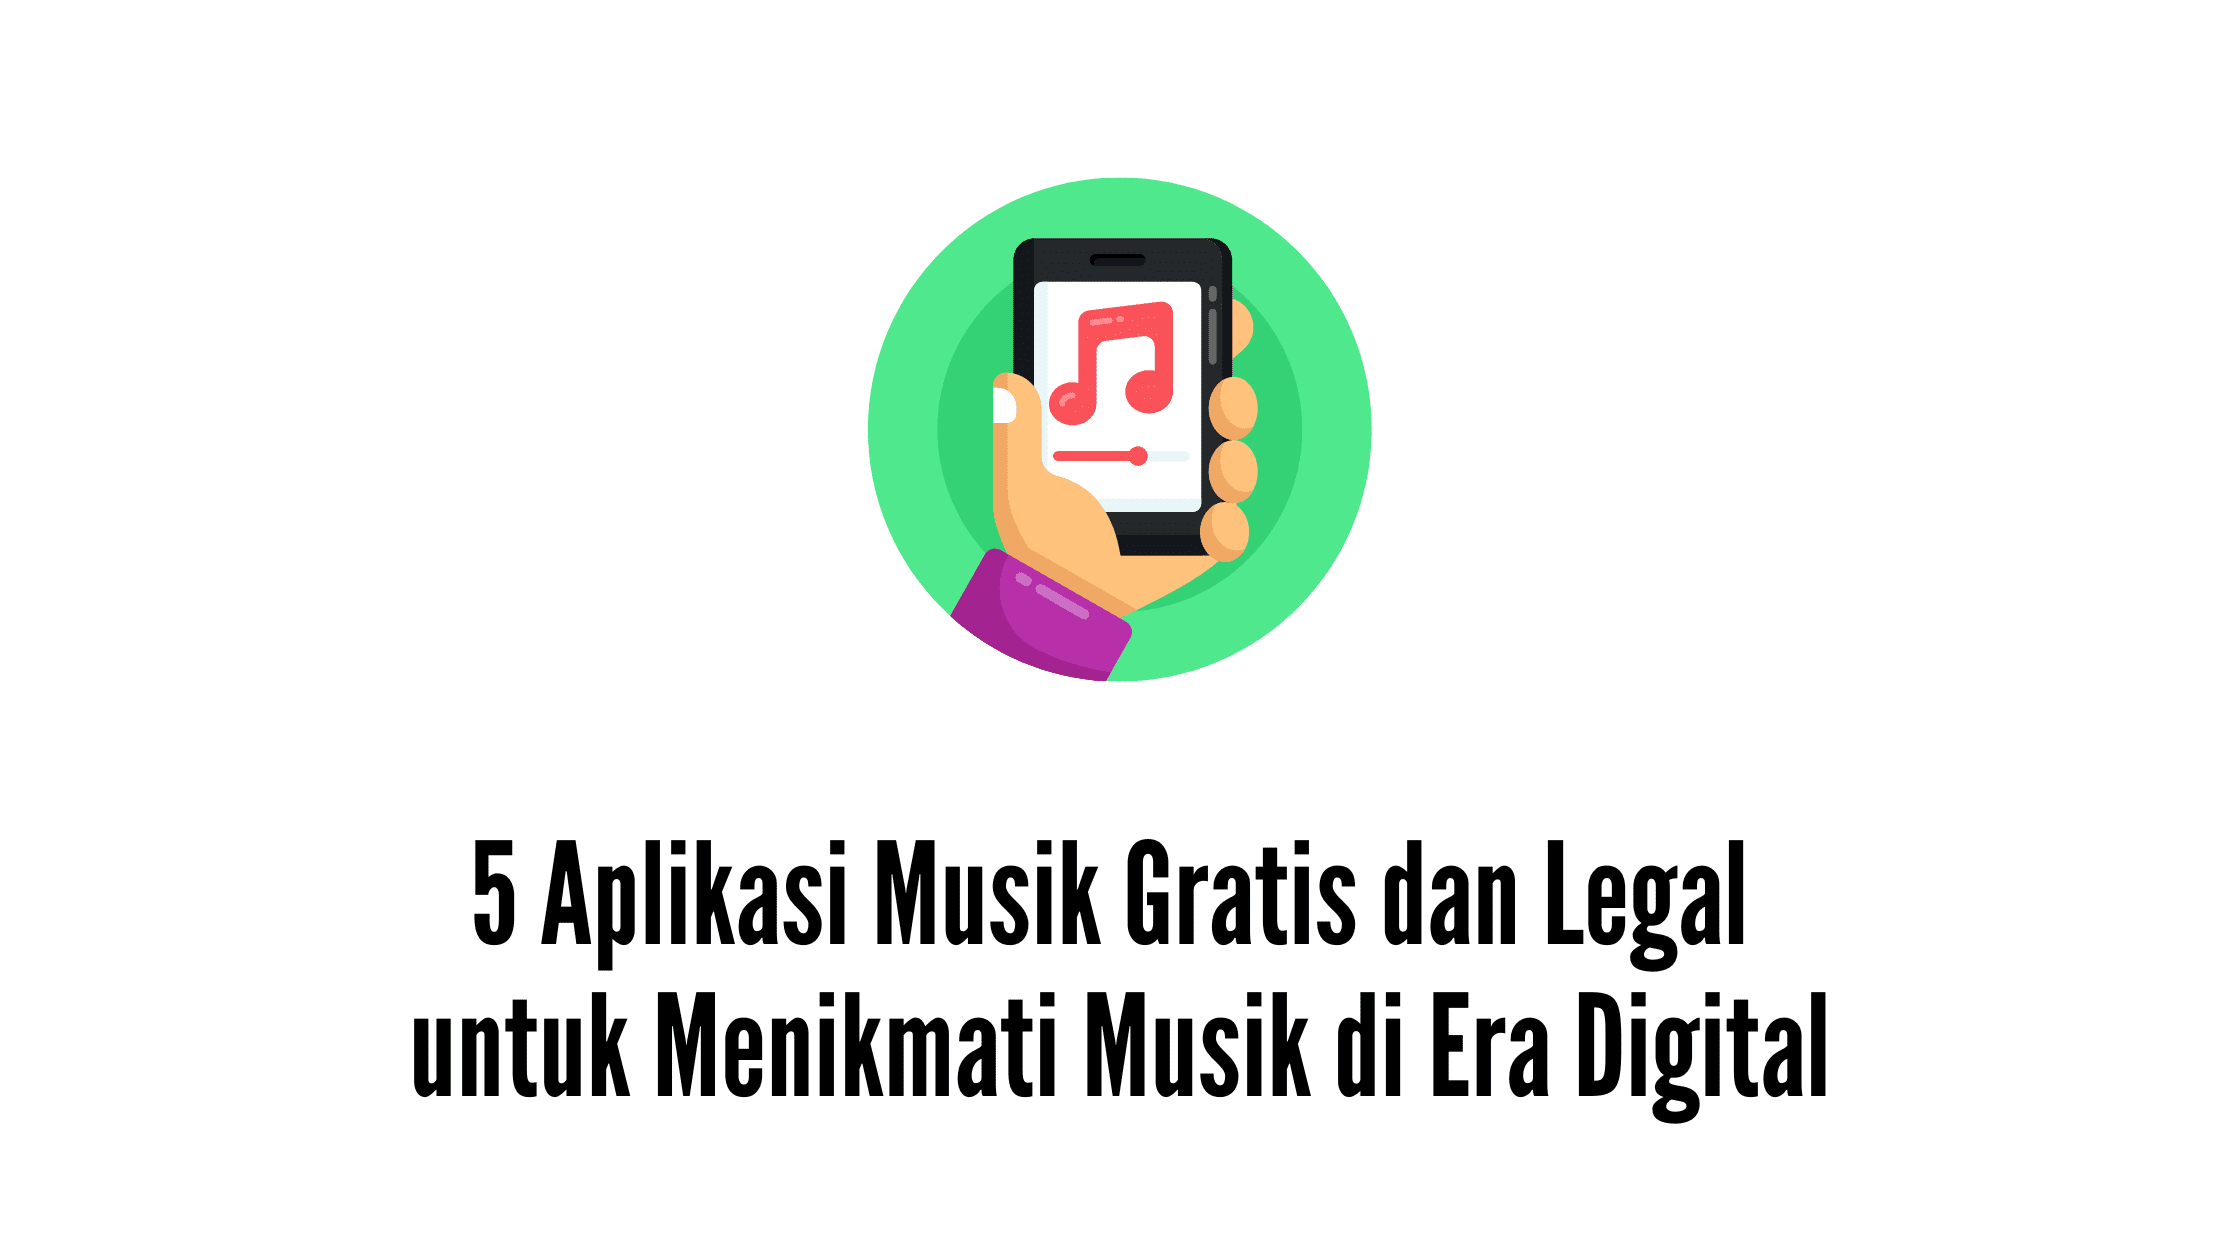 5 Aplikasi Musik Gratis dan Legal untuk Menikmati Musik di Era Digital